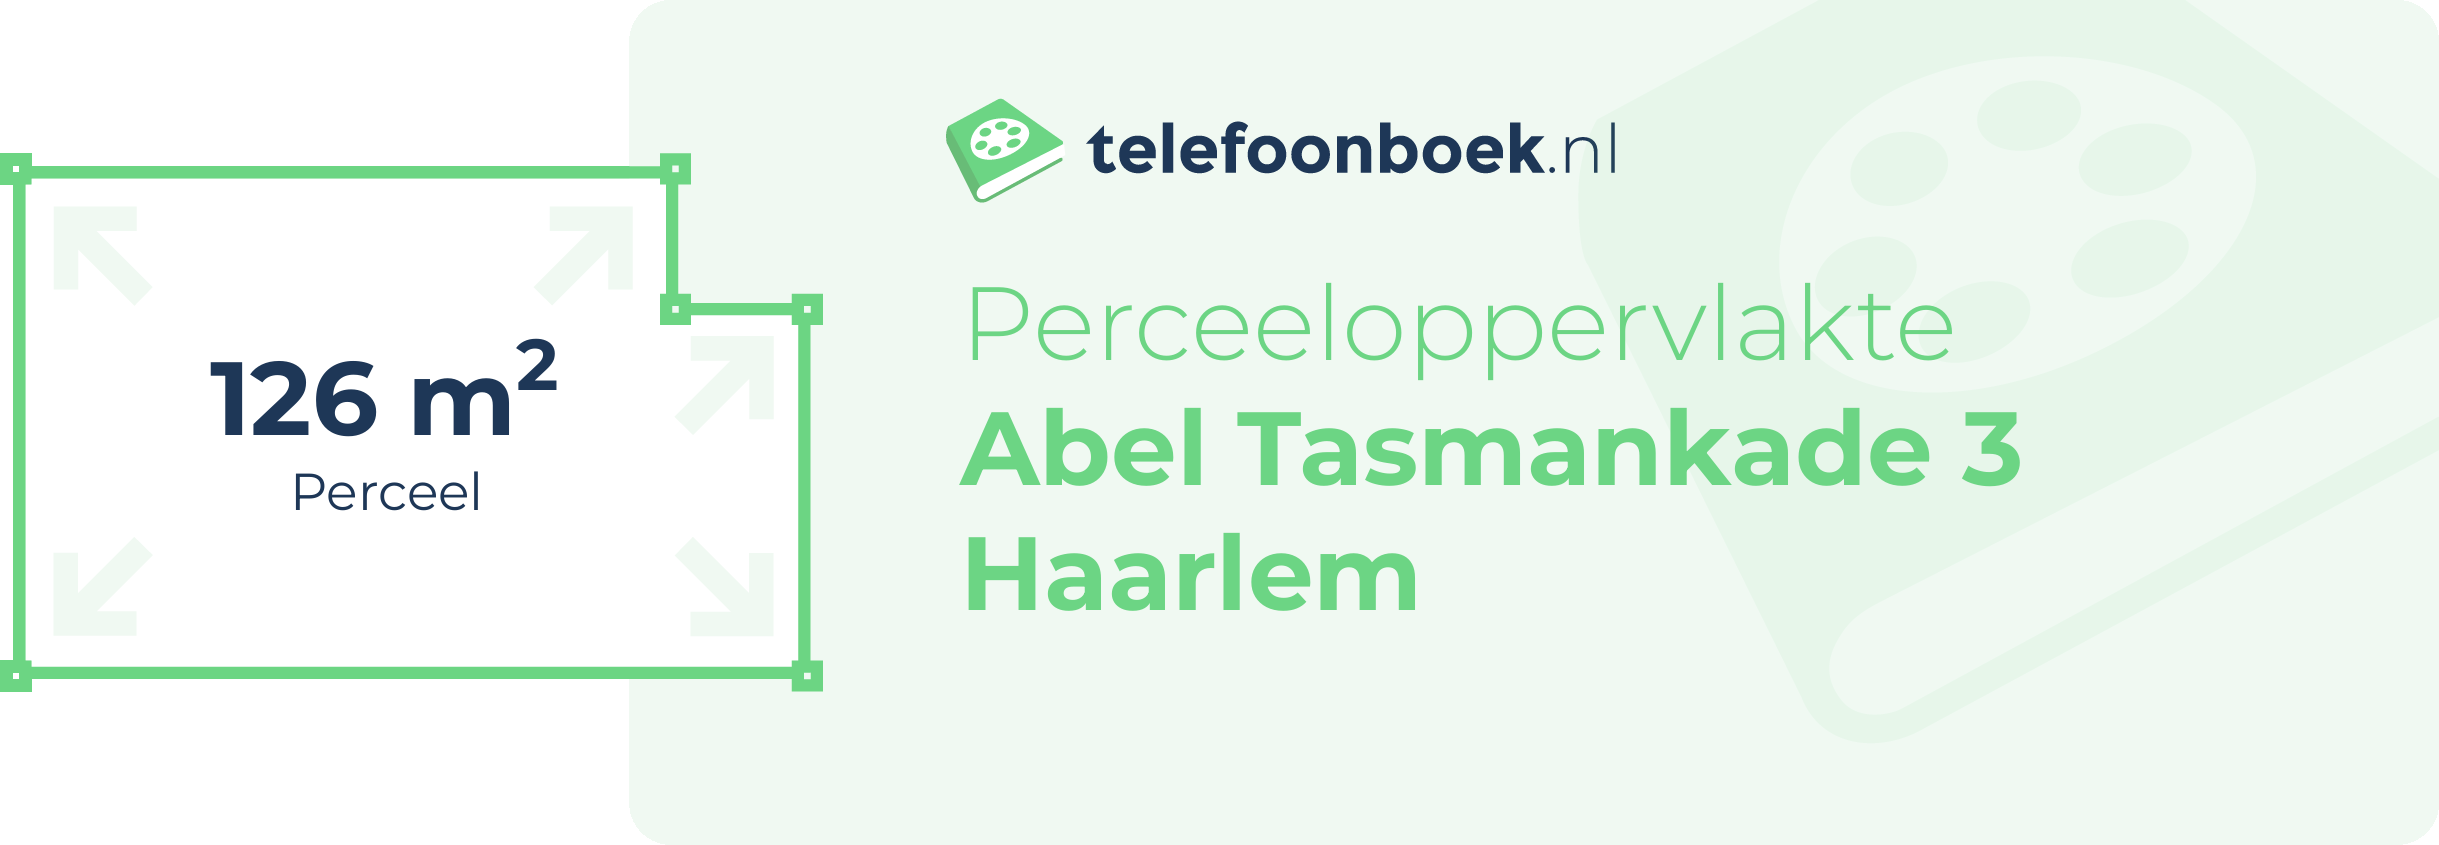 Perceeloppervlakte Abel Tasmankade 3 Haarlem